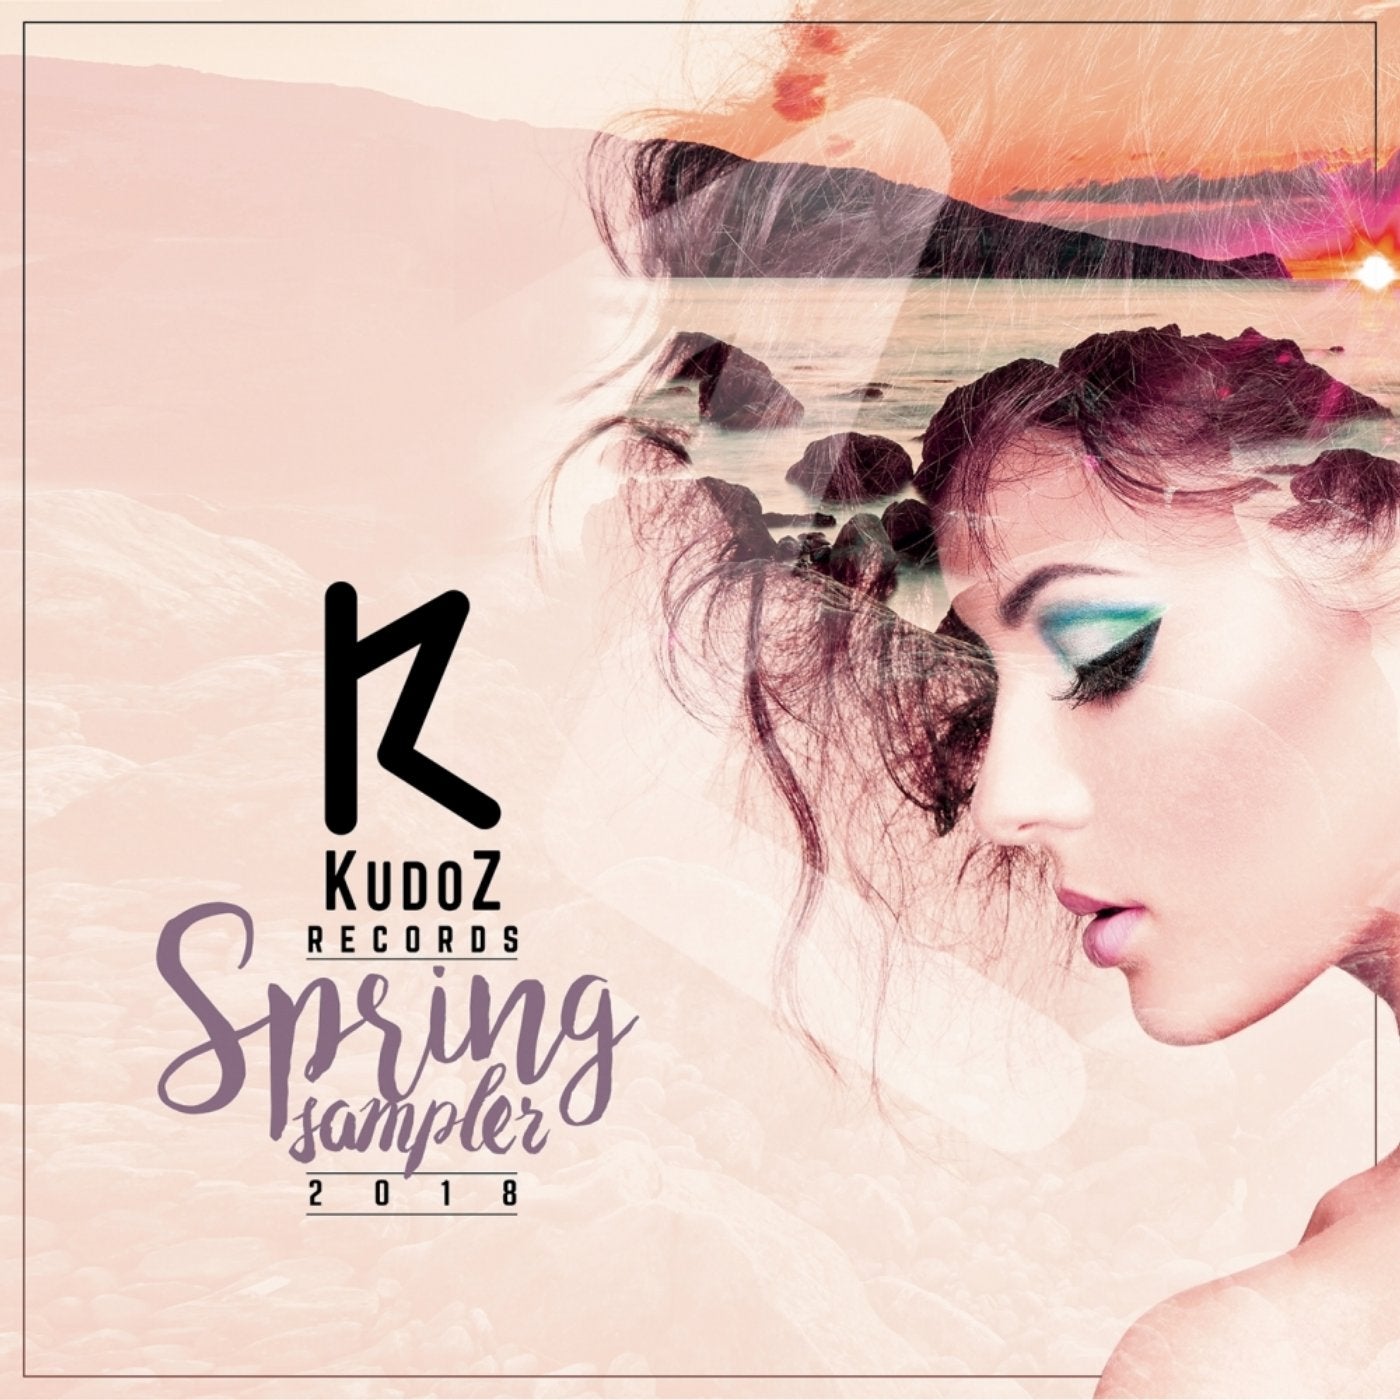 KudoZ Spring Sampler 2018